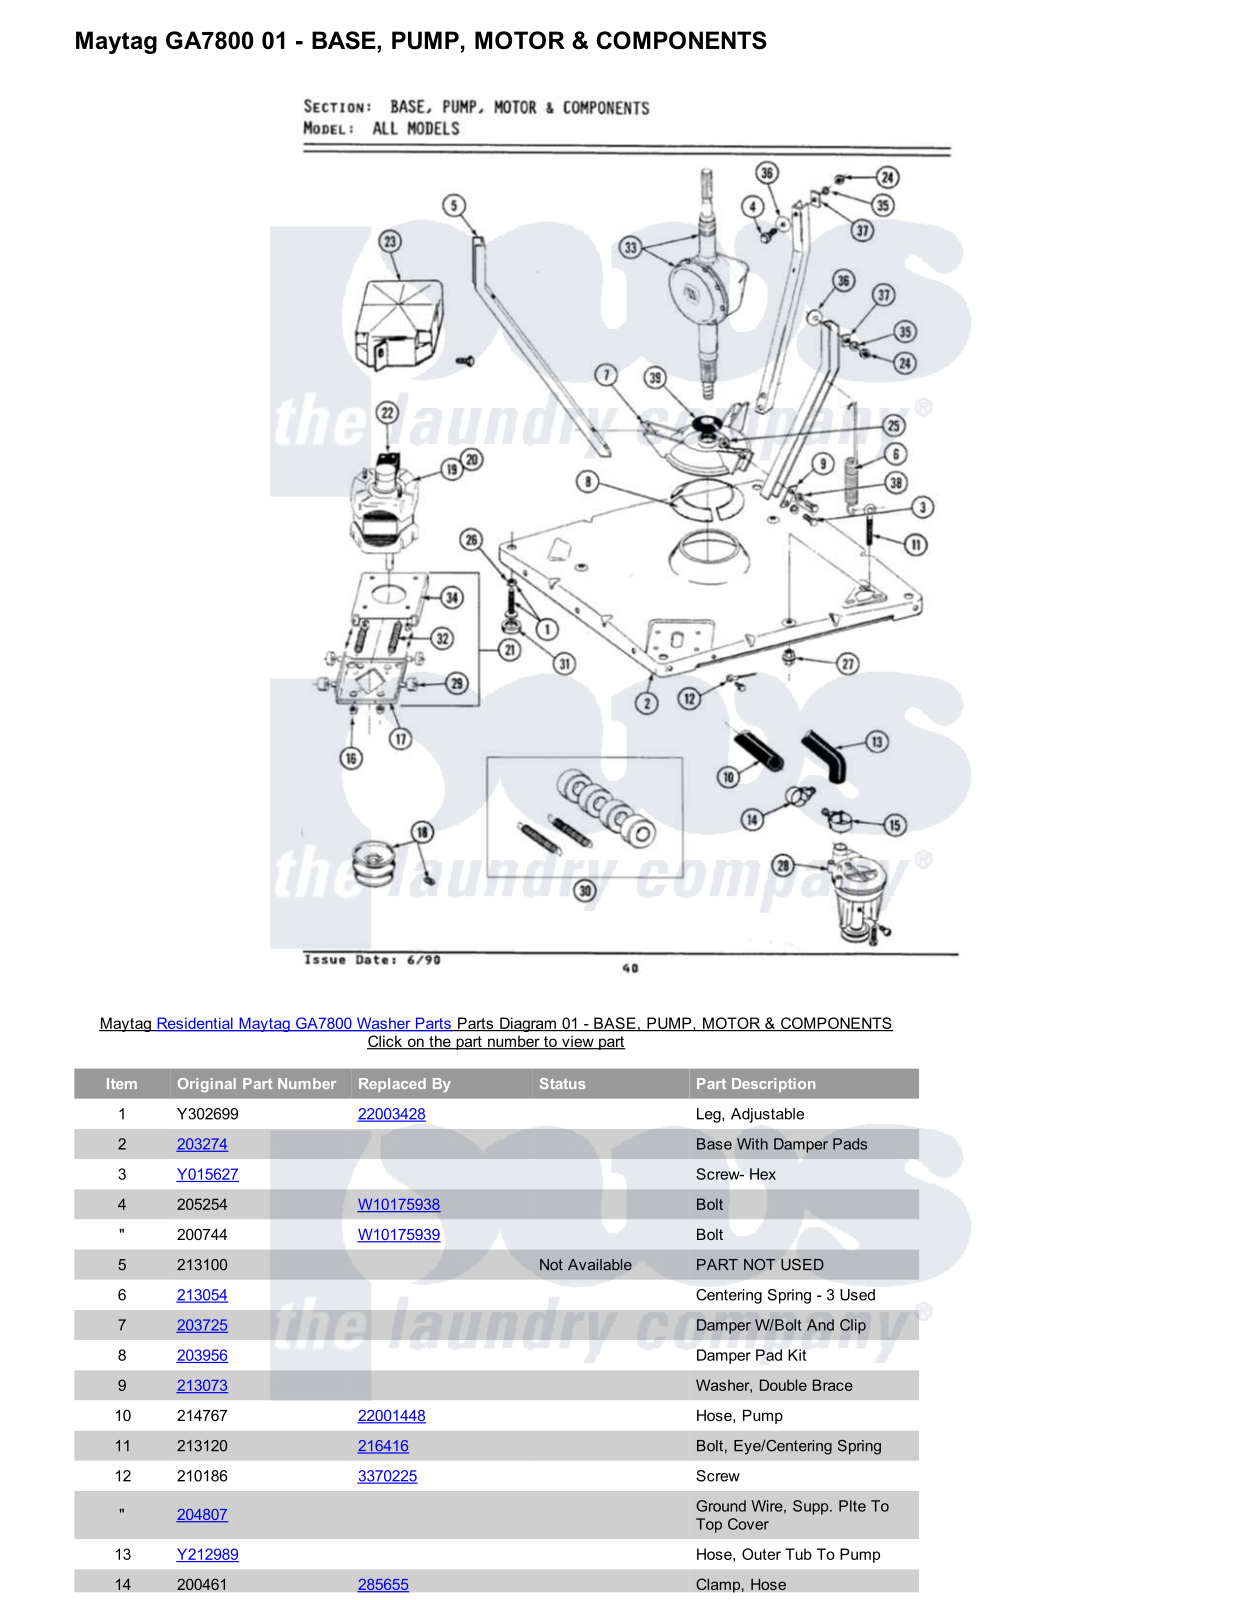 Maytag GA7800 Parts Diagram